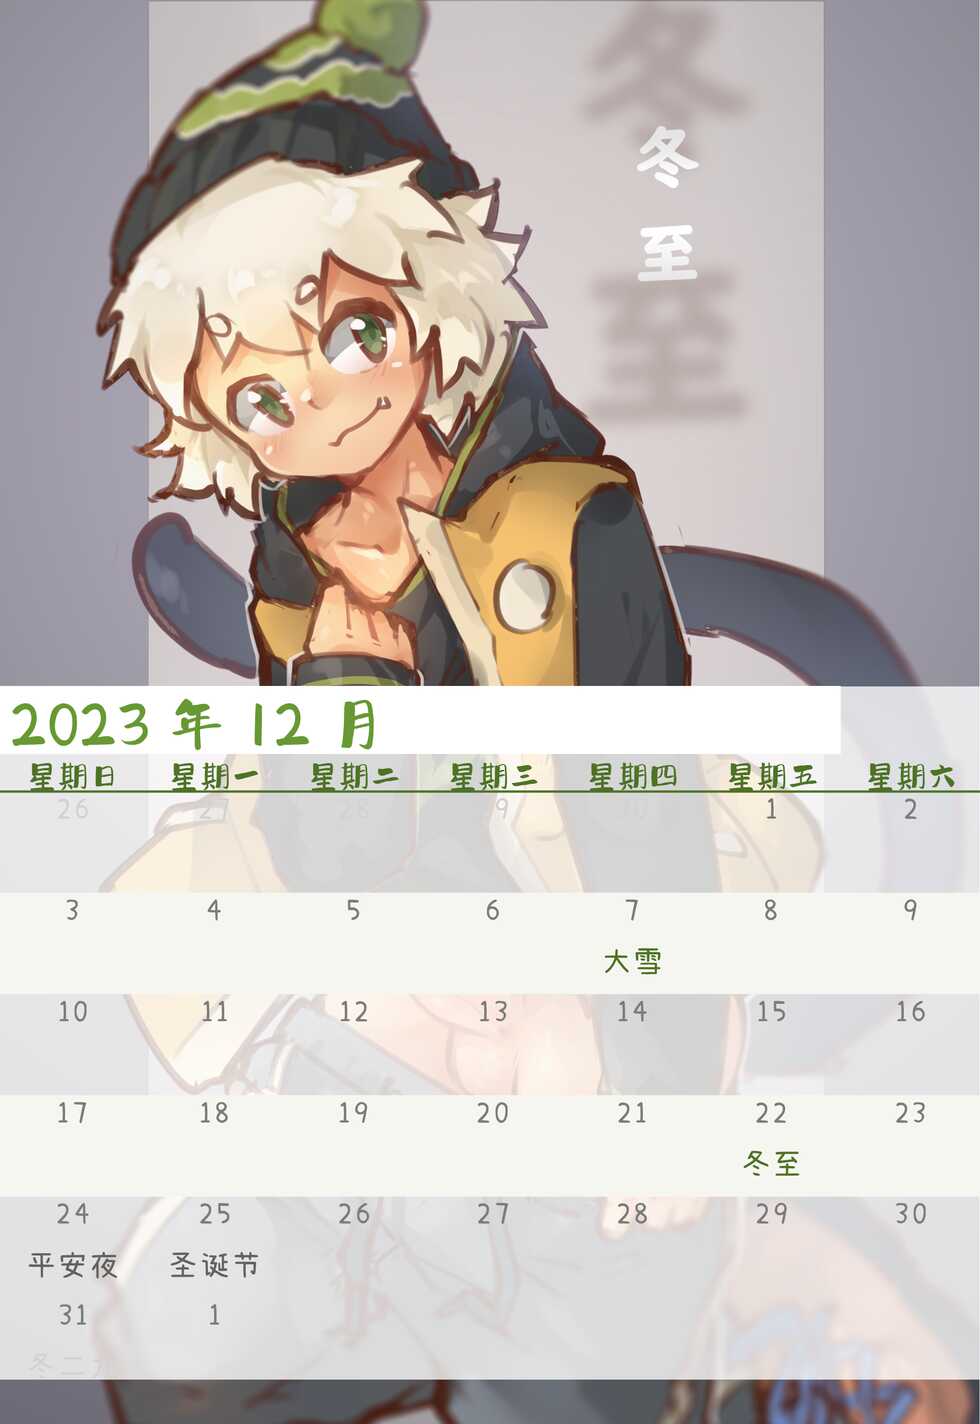 [Suka Genmei] Luo Xiaohei Calendar - Page 30